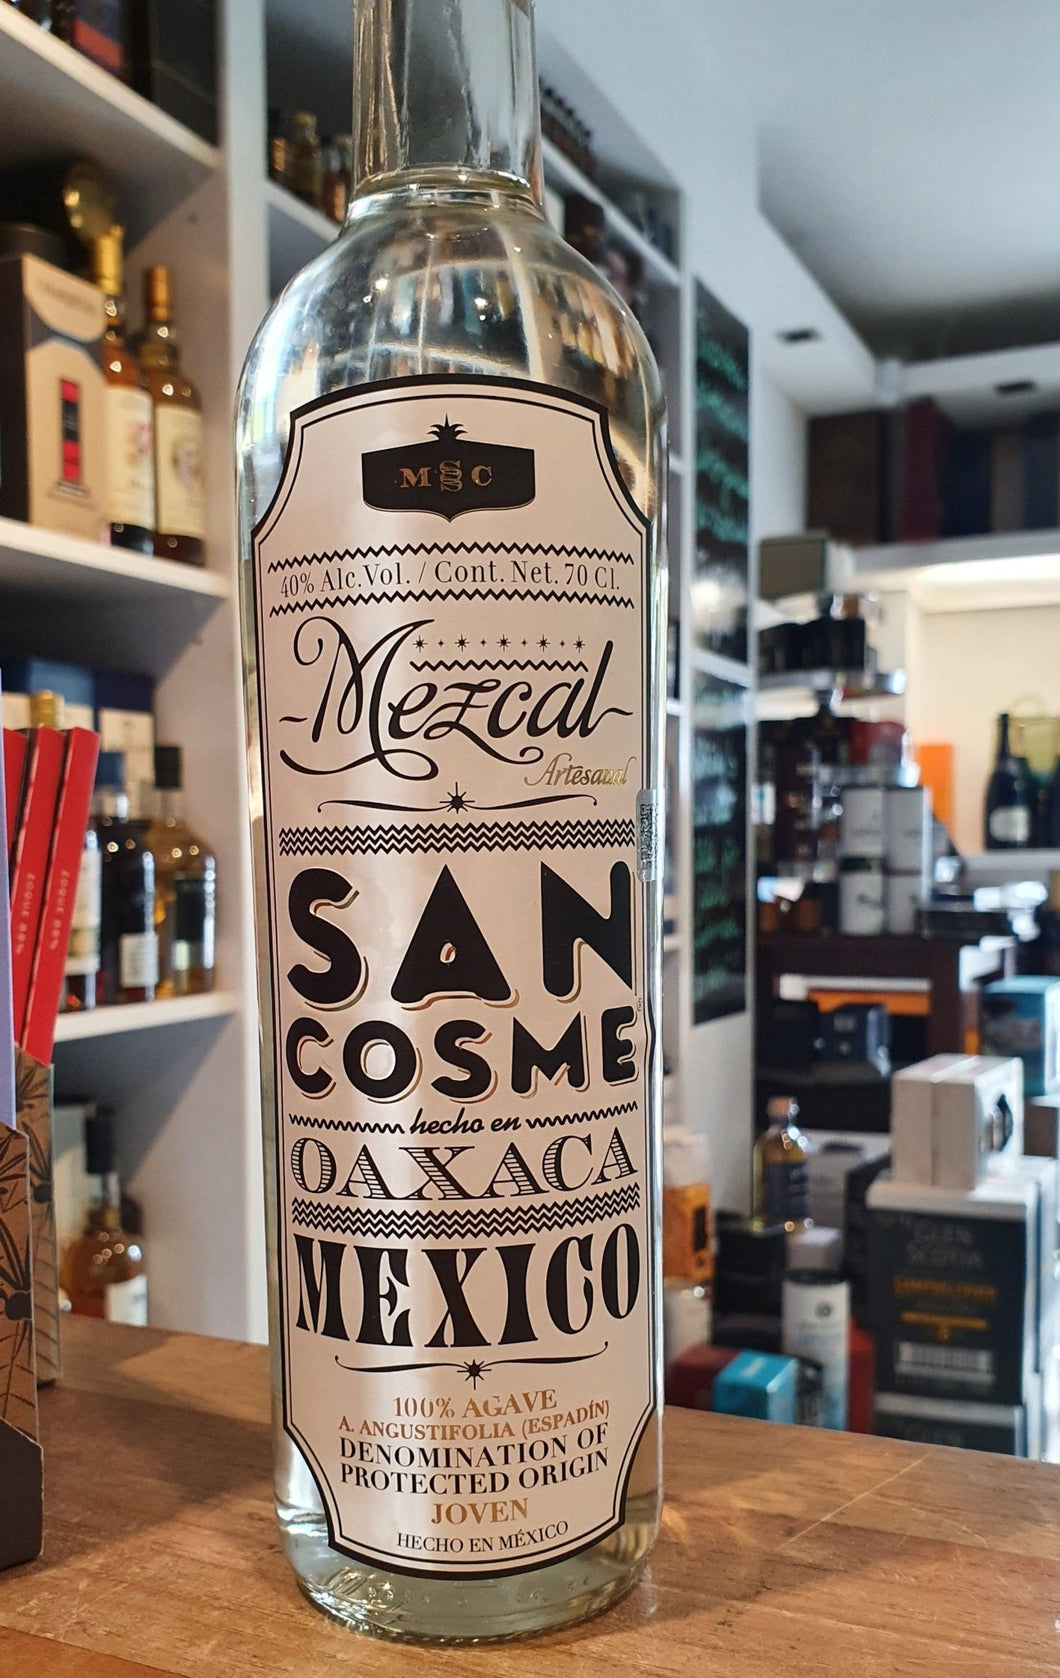 San Cosme Oaxaca Mezcal Joven 0.7l Flasche 40% vol. Mexico